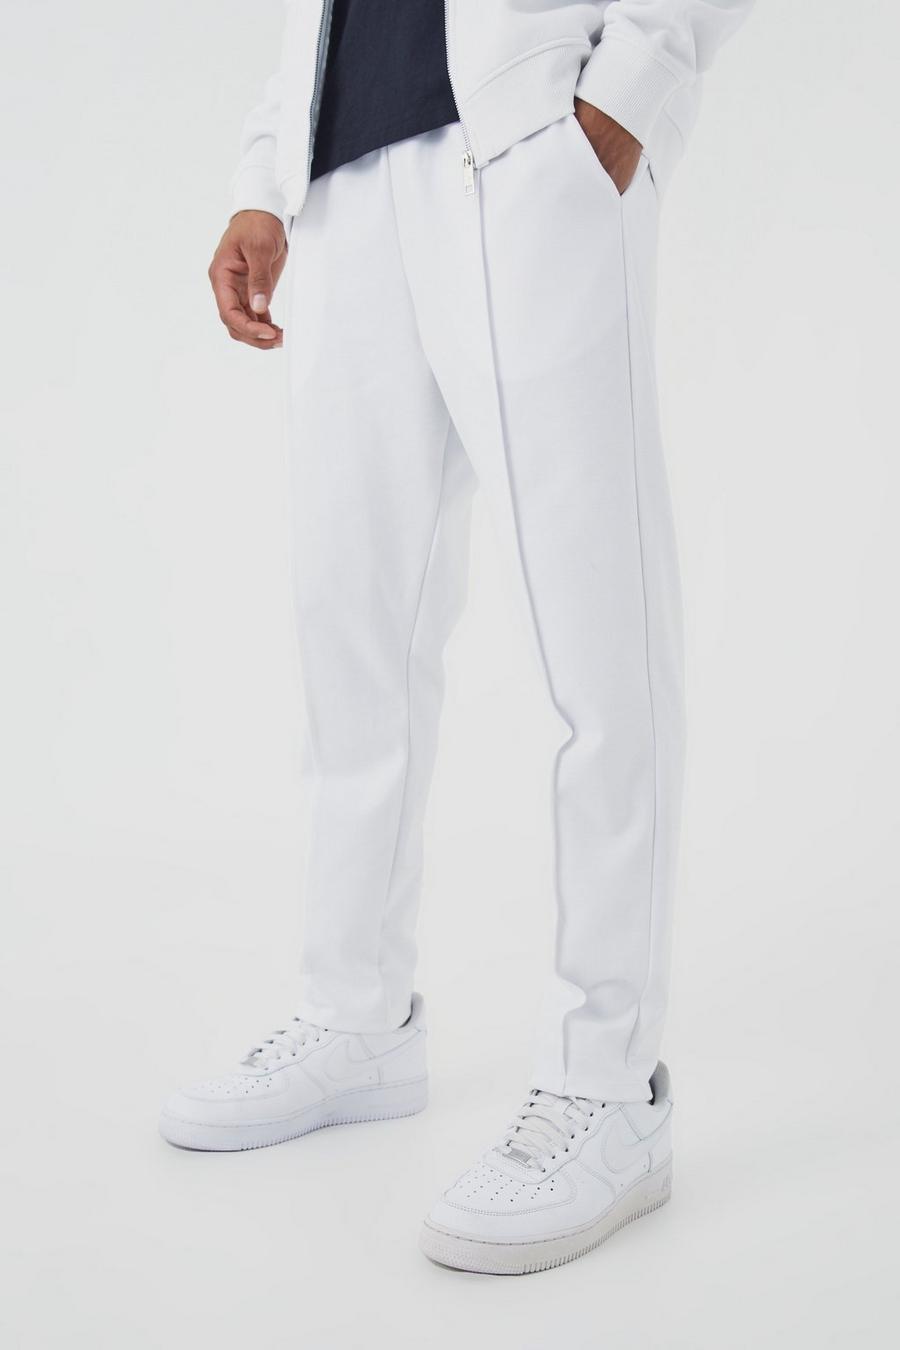 Schmale Slim-Fit Jogginghose mit elastischem Bund, White blanc